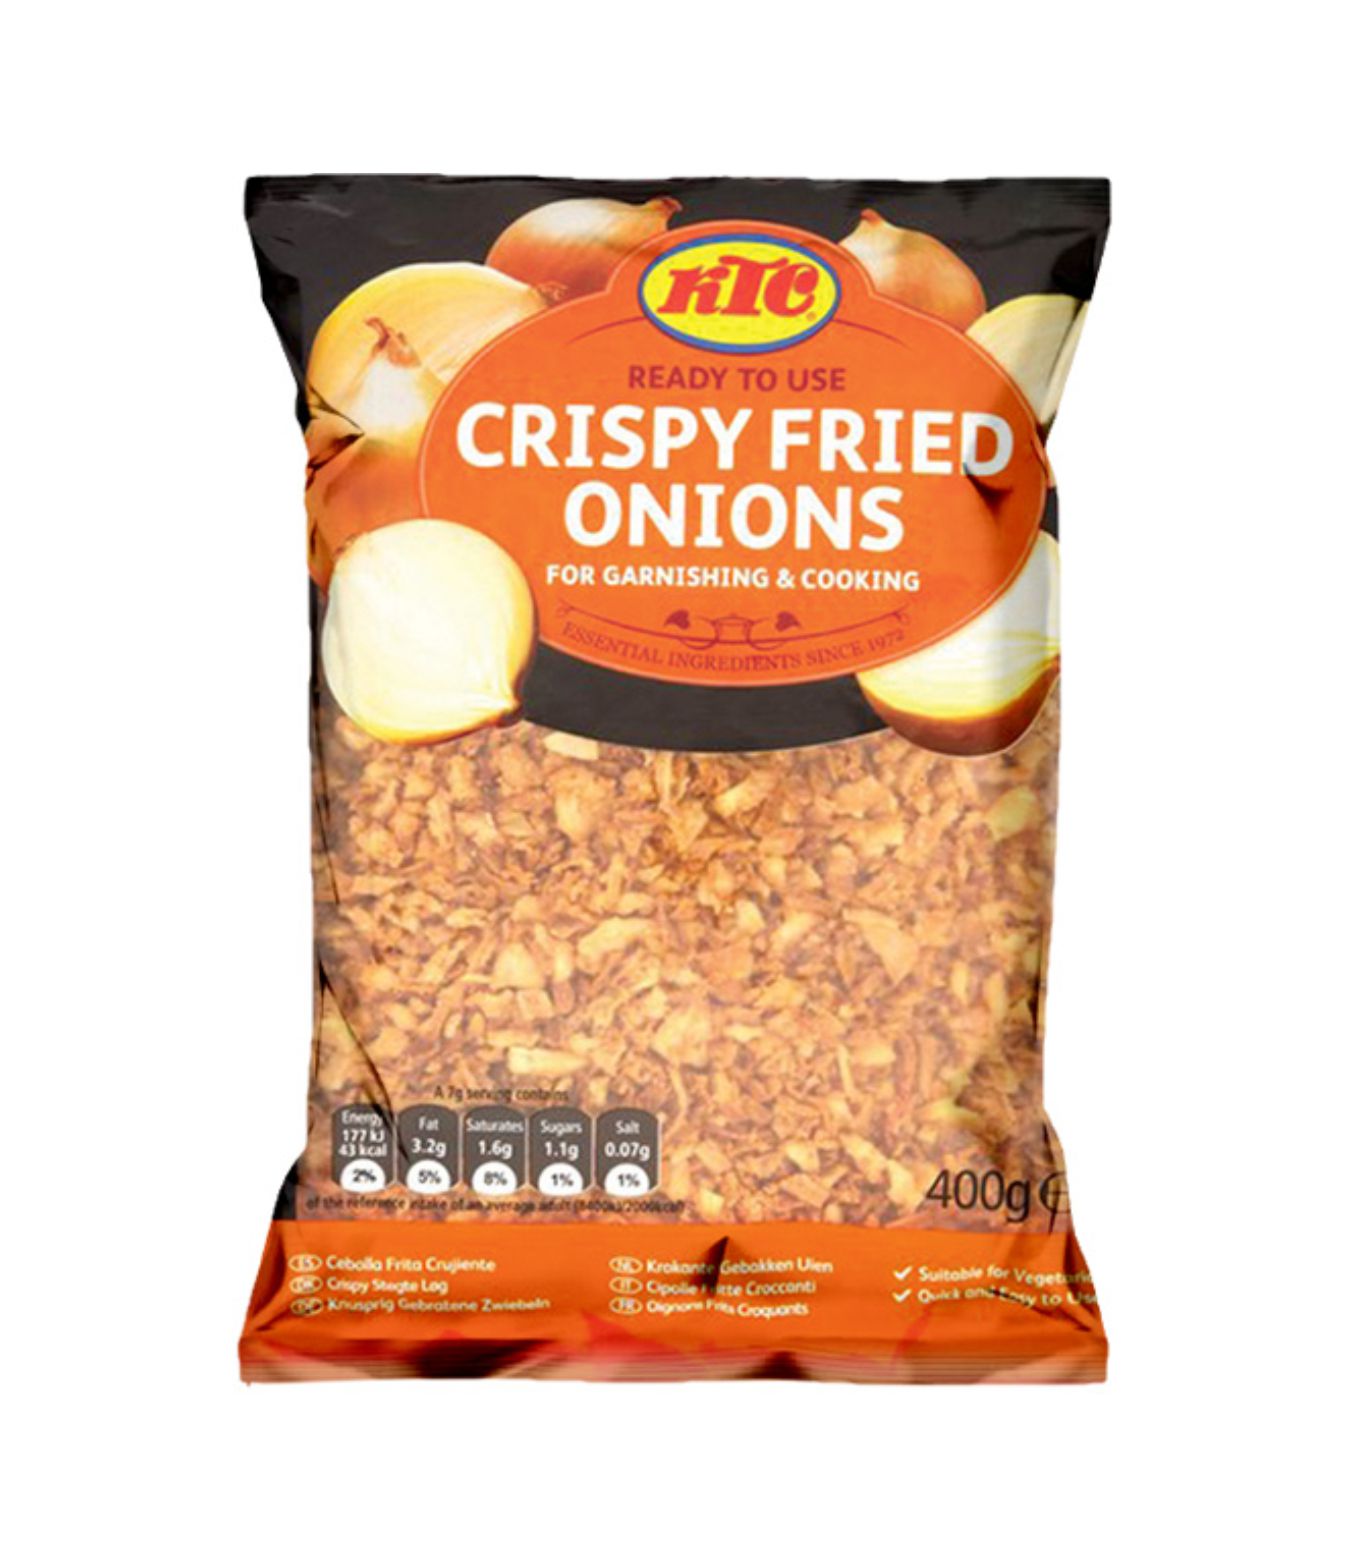 KTC Crispy Fried Onions x 400g